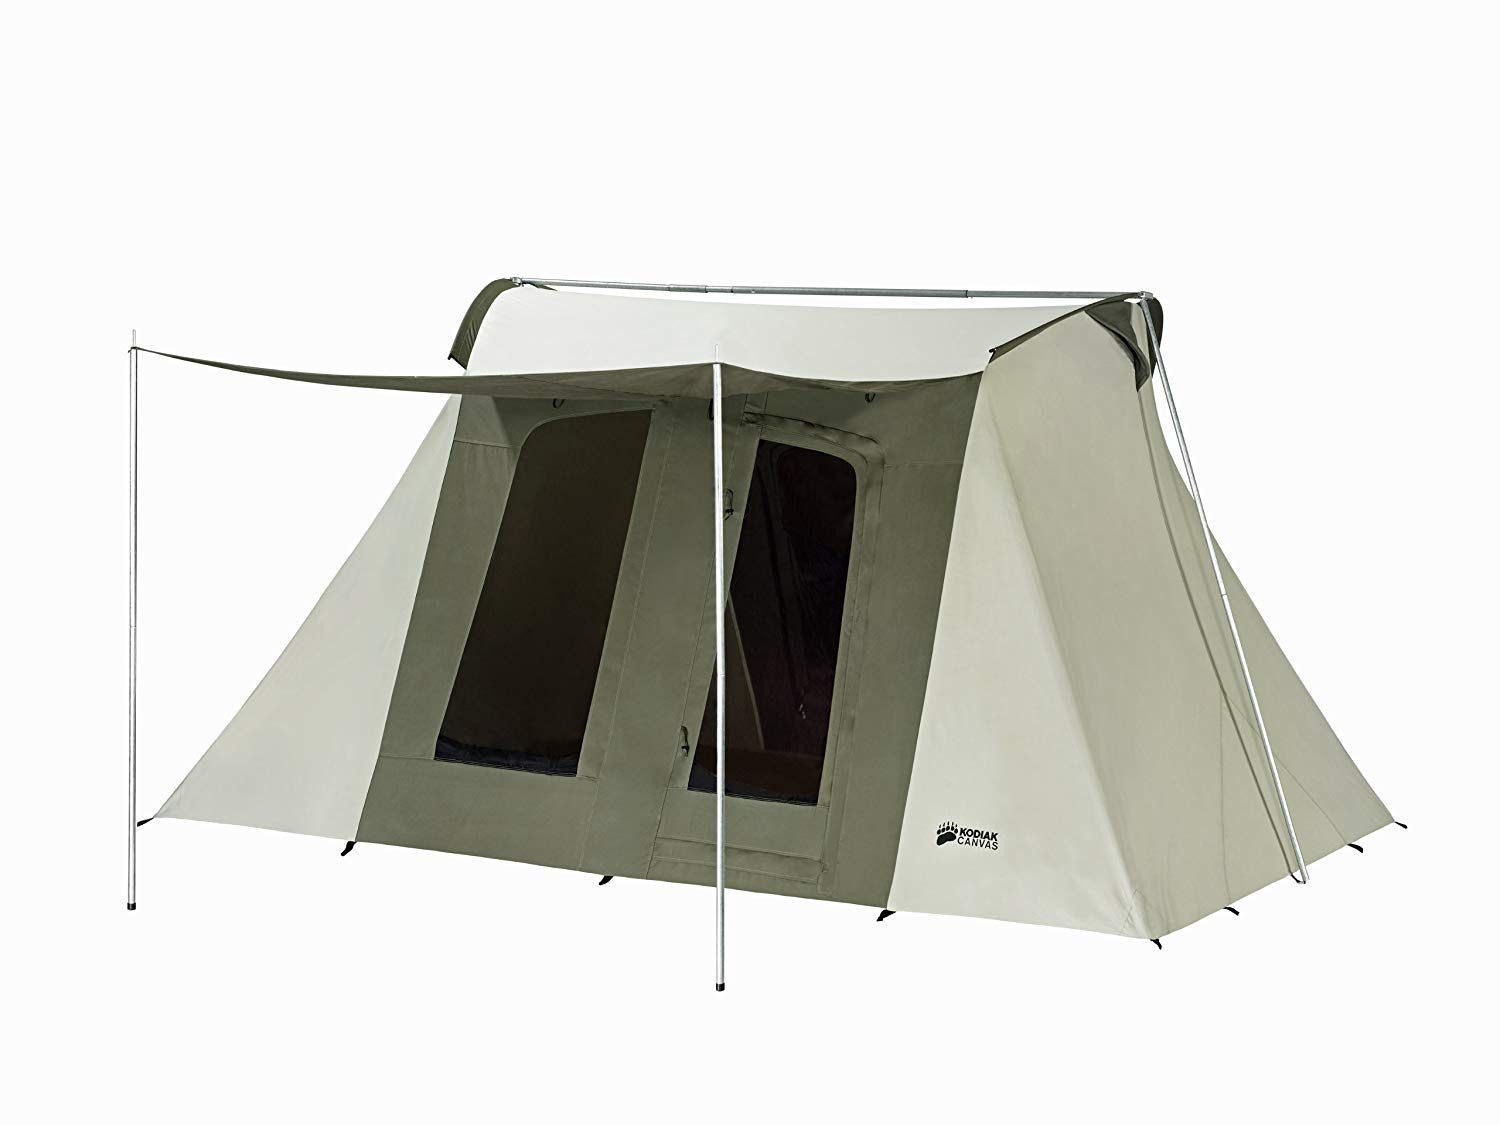 Kodiak Canvas Flex-Bow Deluxe Tent